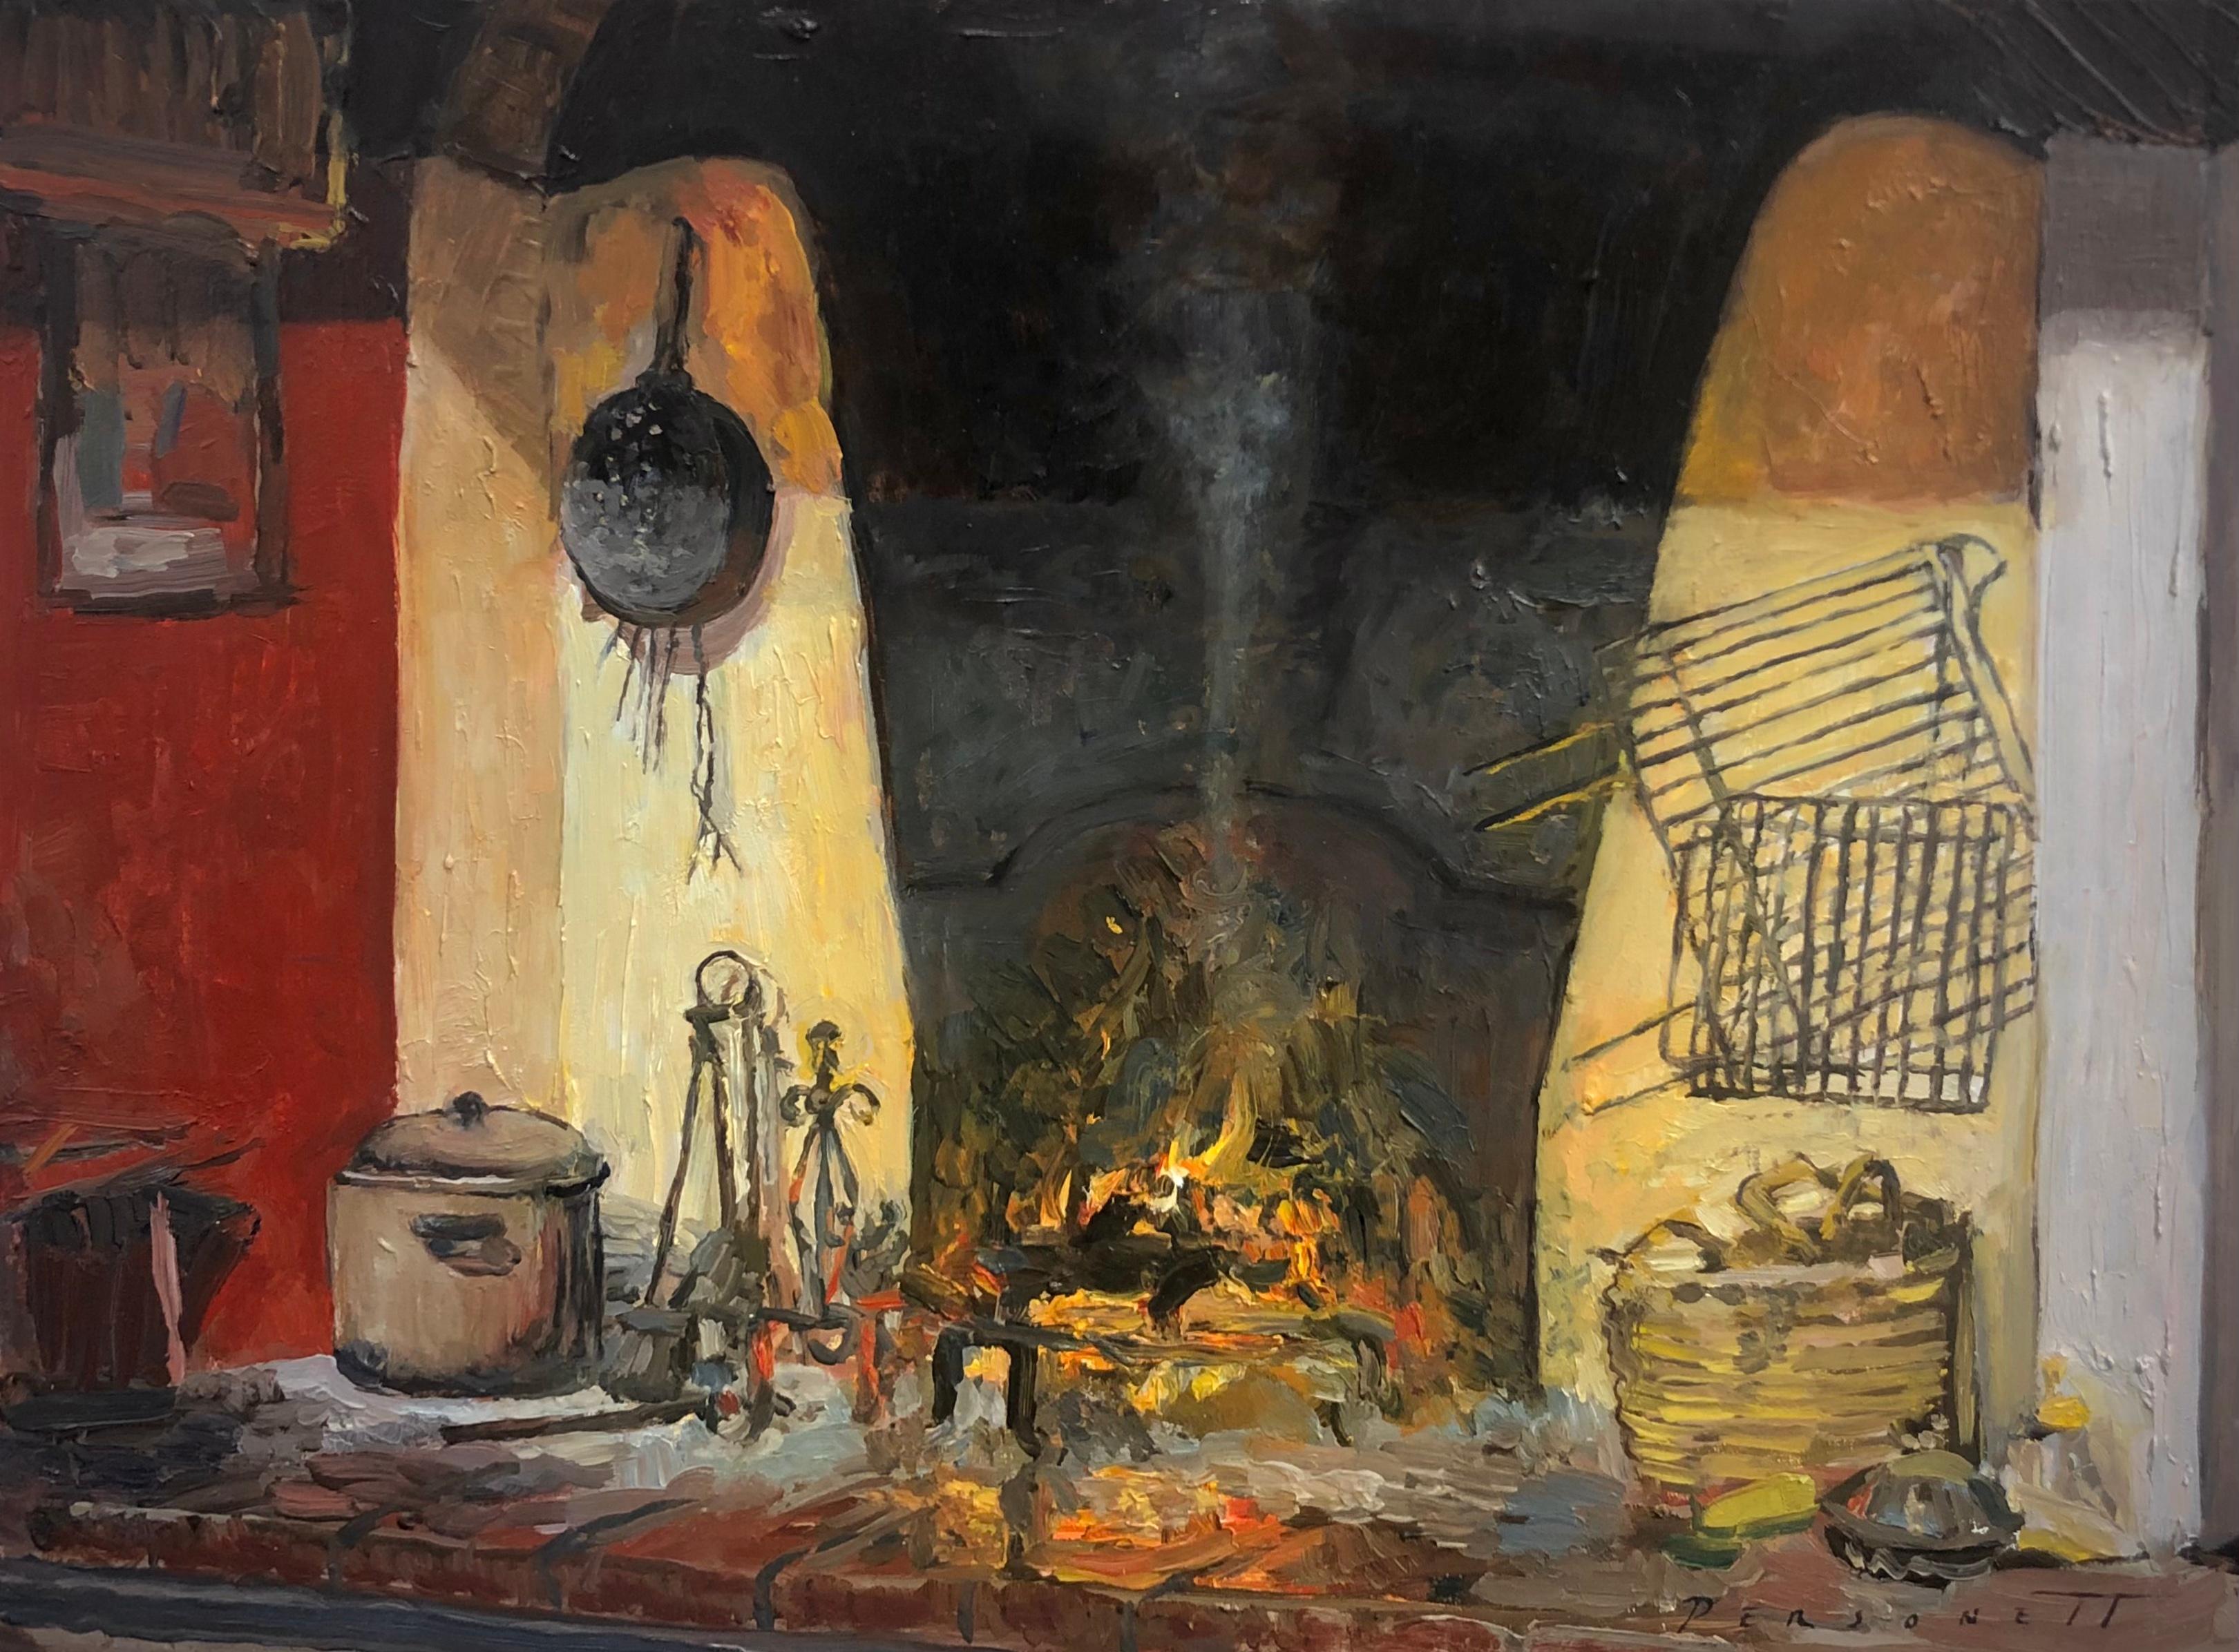 Still-Life Painting Rachel Personett - "Fenske's Fireplace" peinture à l'huile réaliste contemporaine, ambiance toscane hivernale chaleureuse